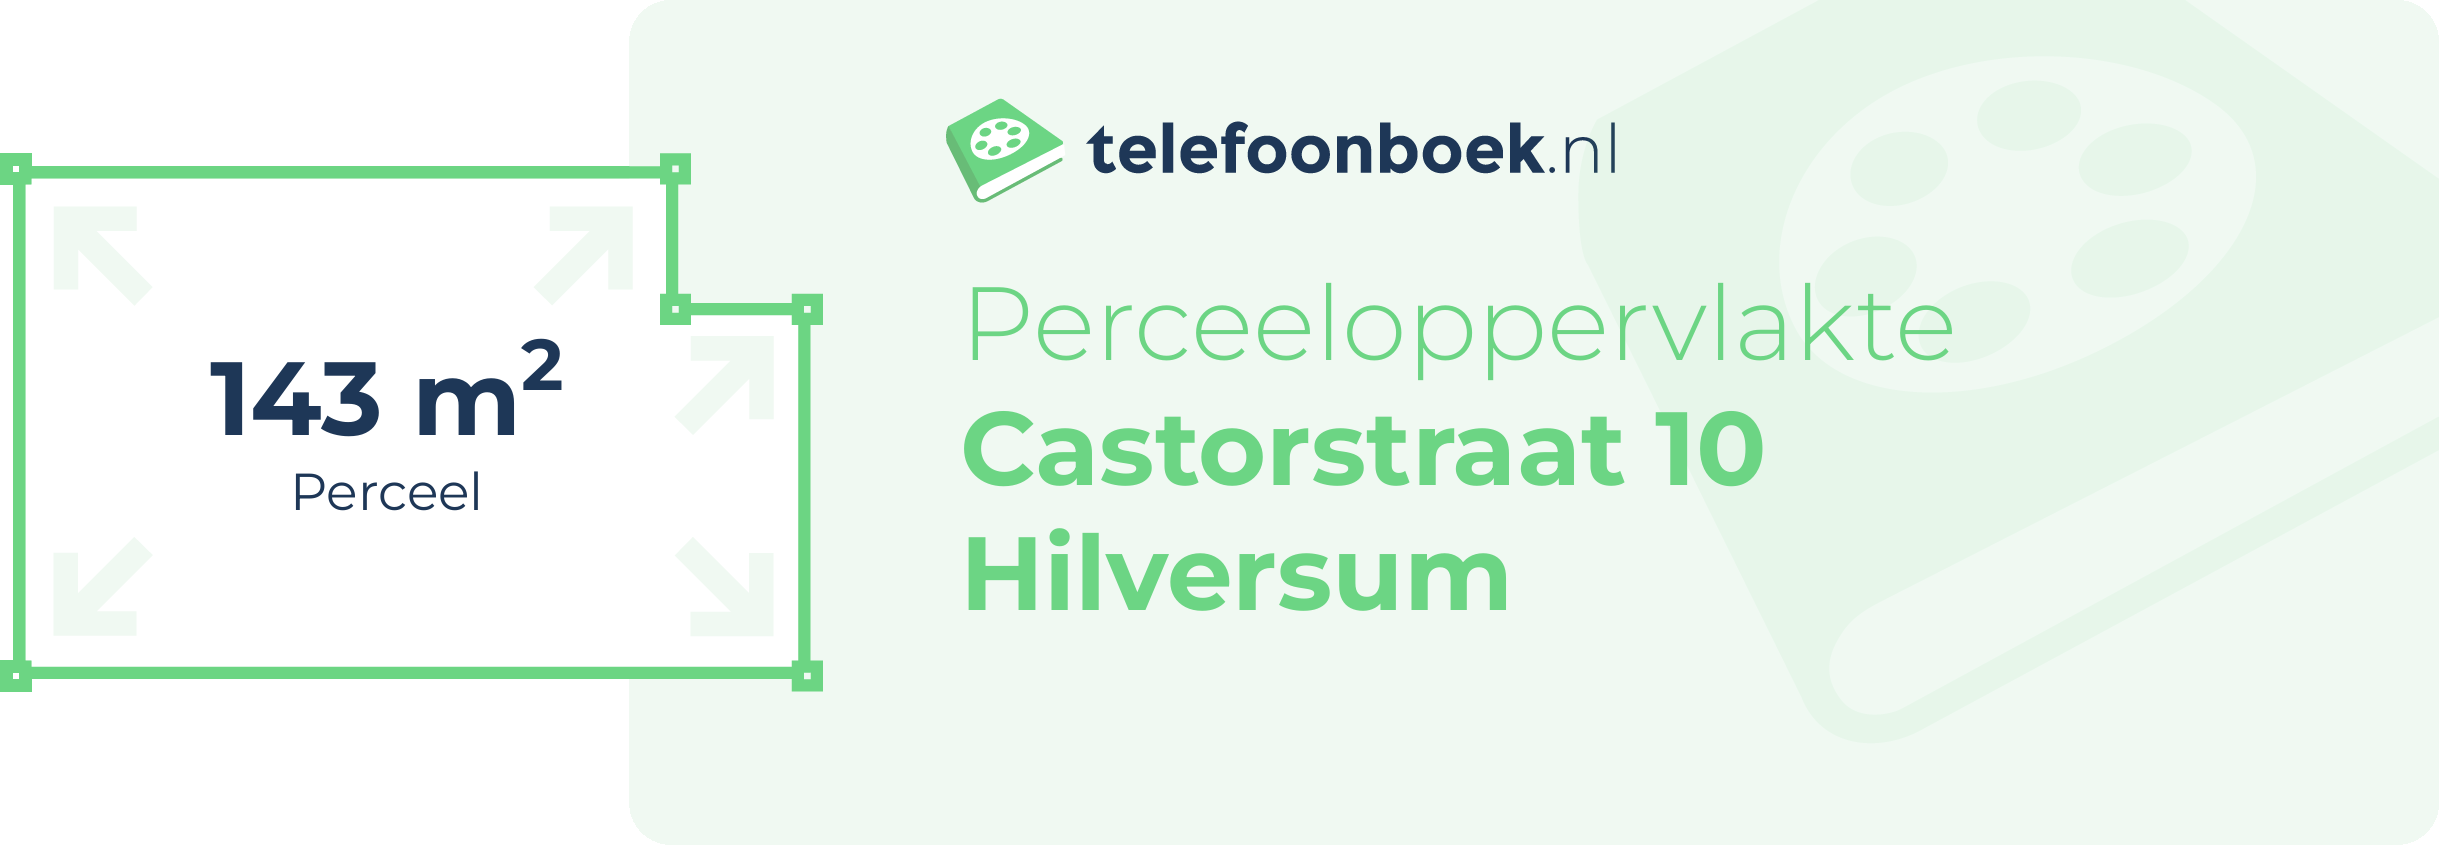 Perceeloppervlakte Castorstraat 10 Hilversum